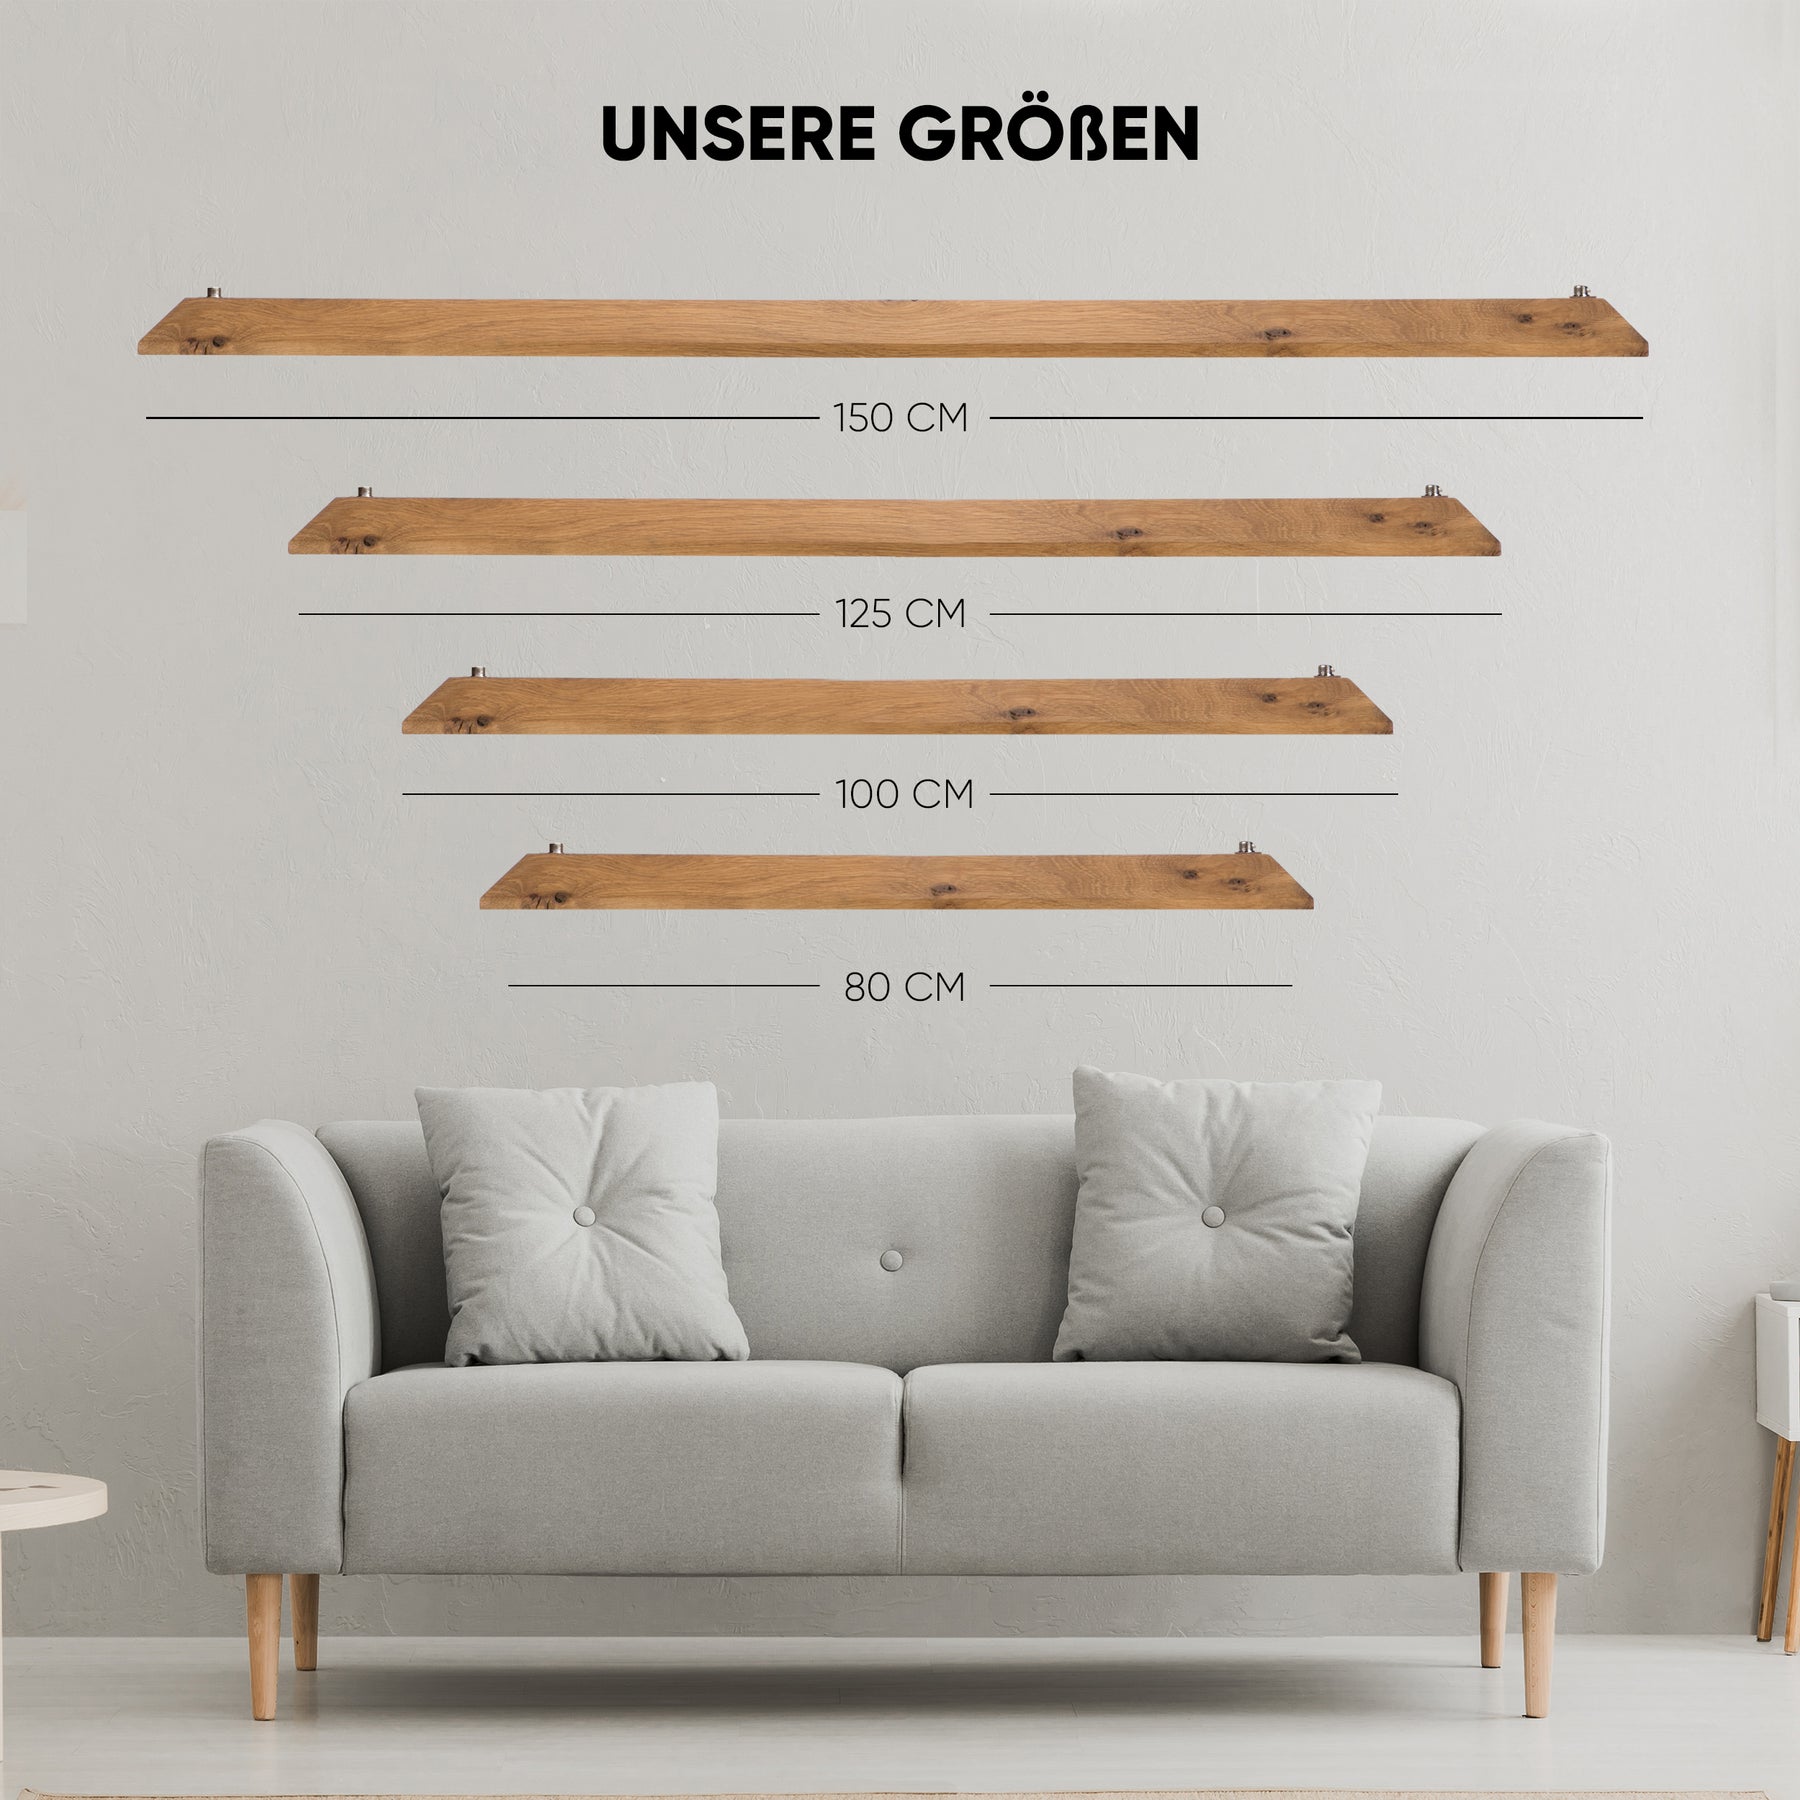 Bild mit 4 unterschiedlichen Größen unserer Designer Pendelleuchte aus Massivholz, Die Größe 150 cm , 125 cm, 100 cm und 80 cm.